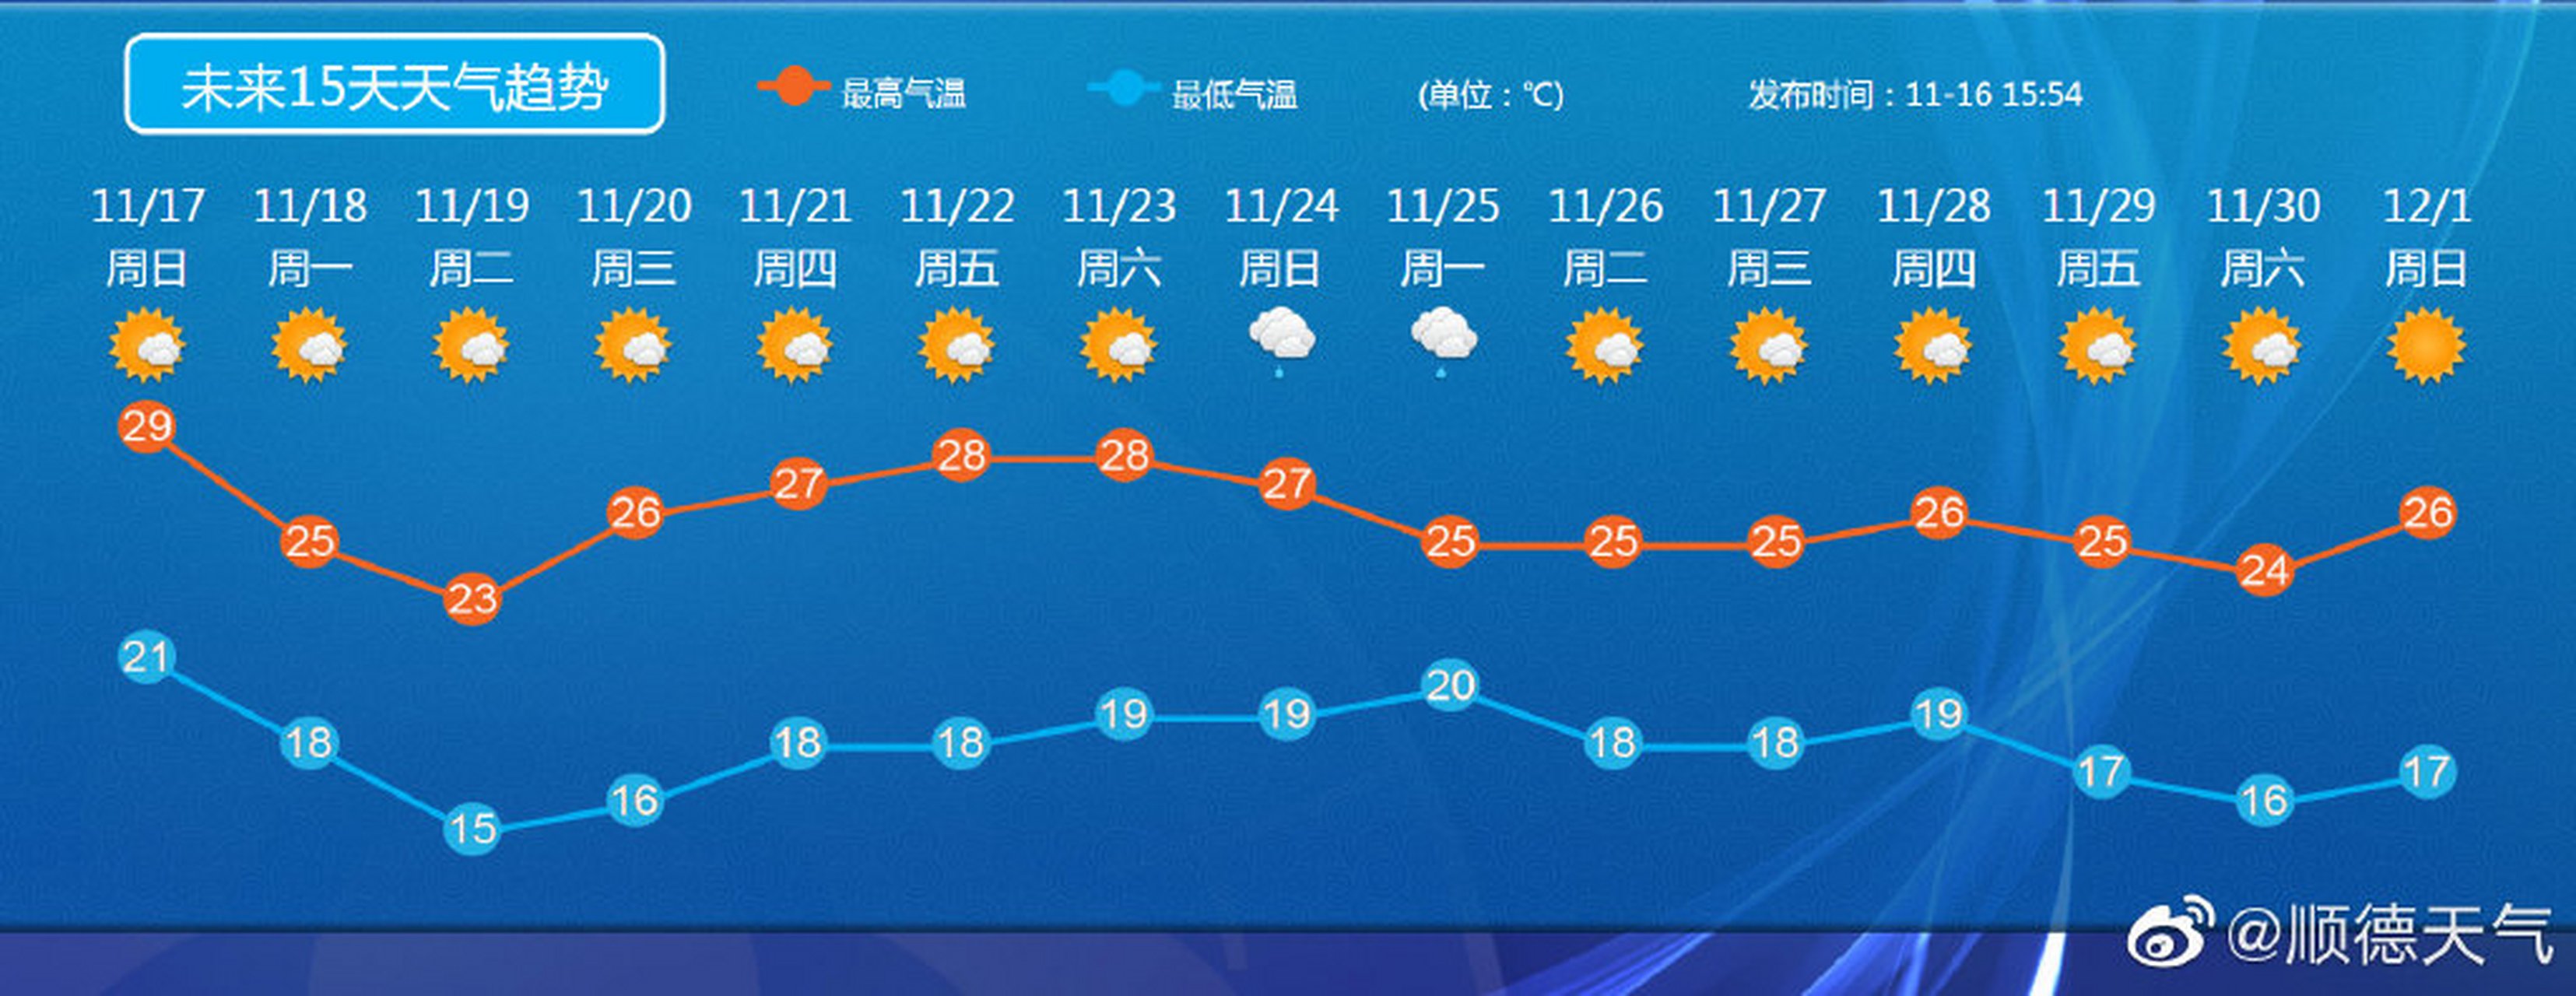 每日社会热点【顺德未来15天天气预报】